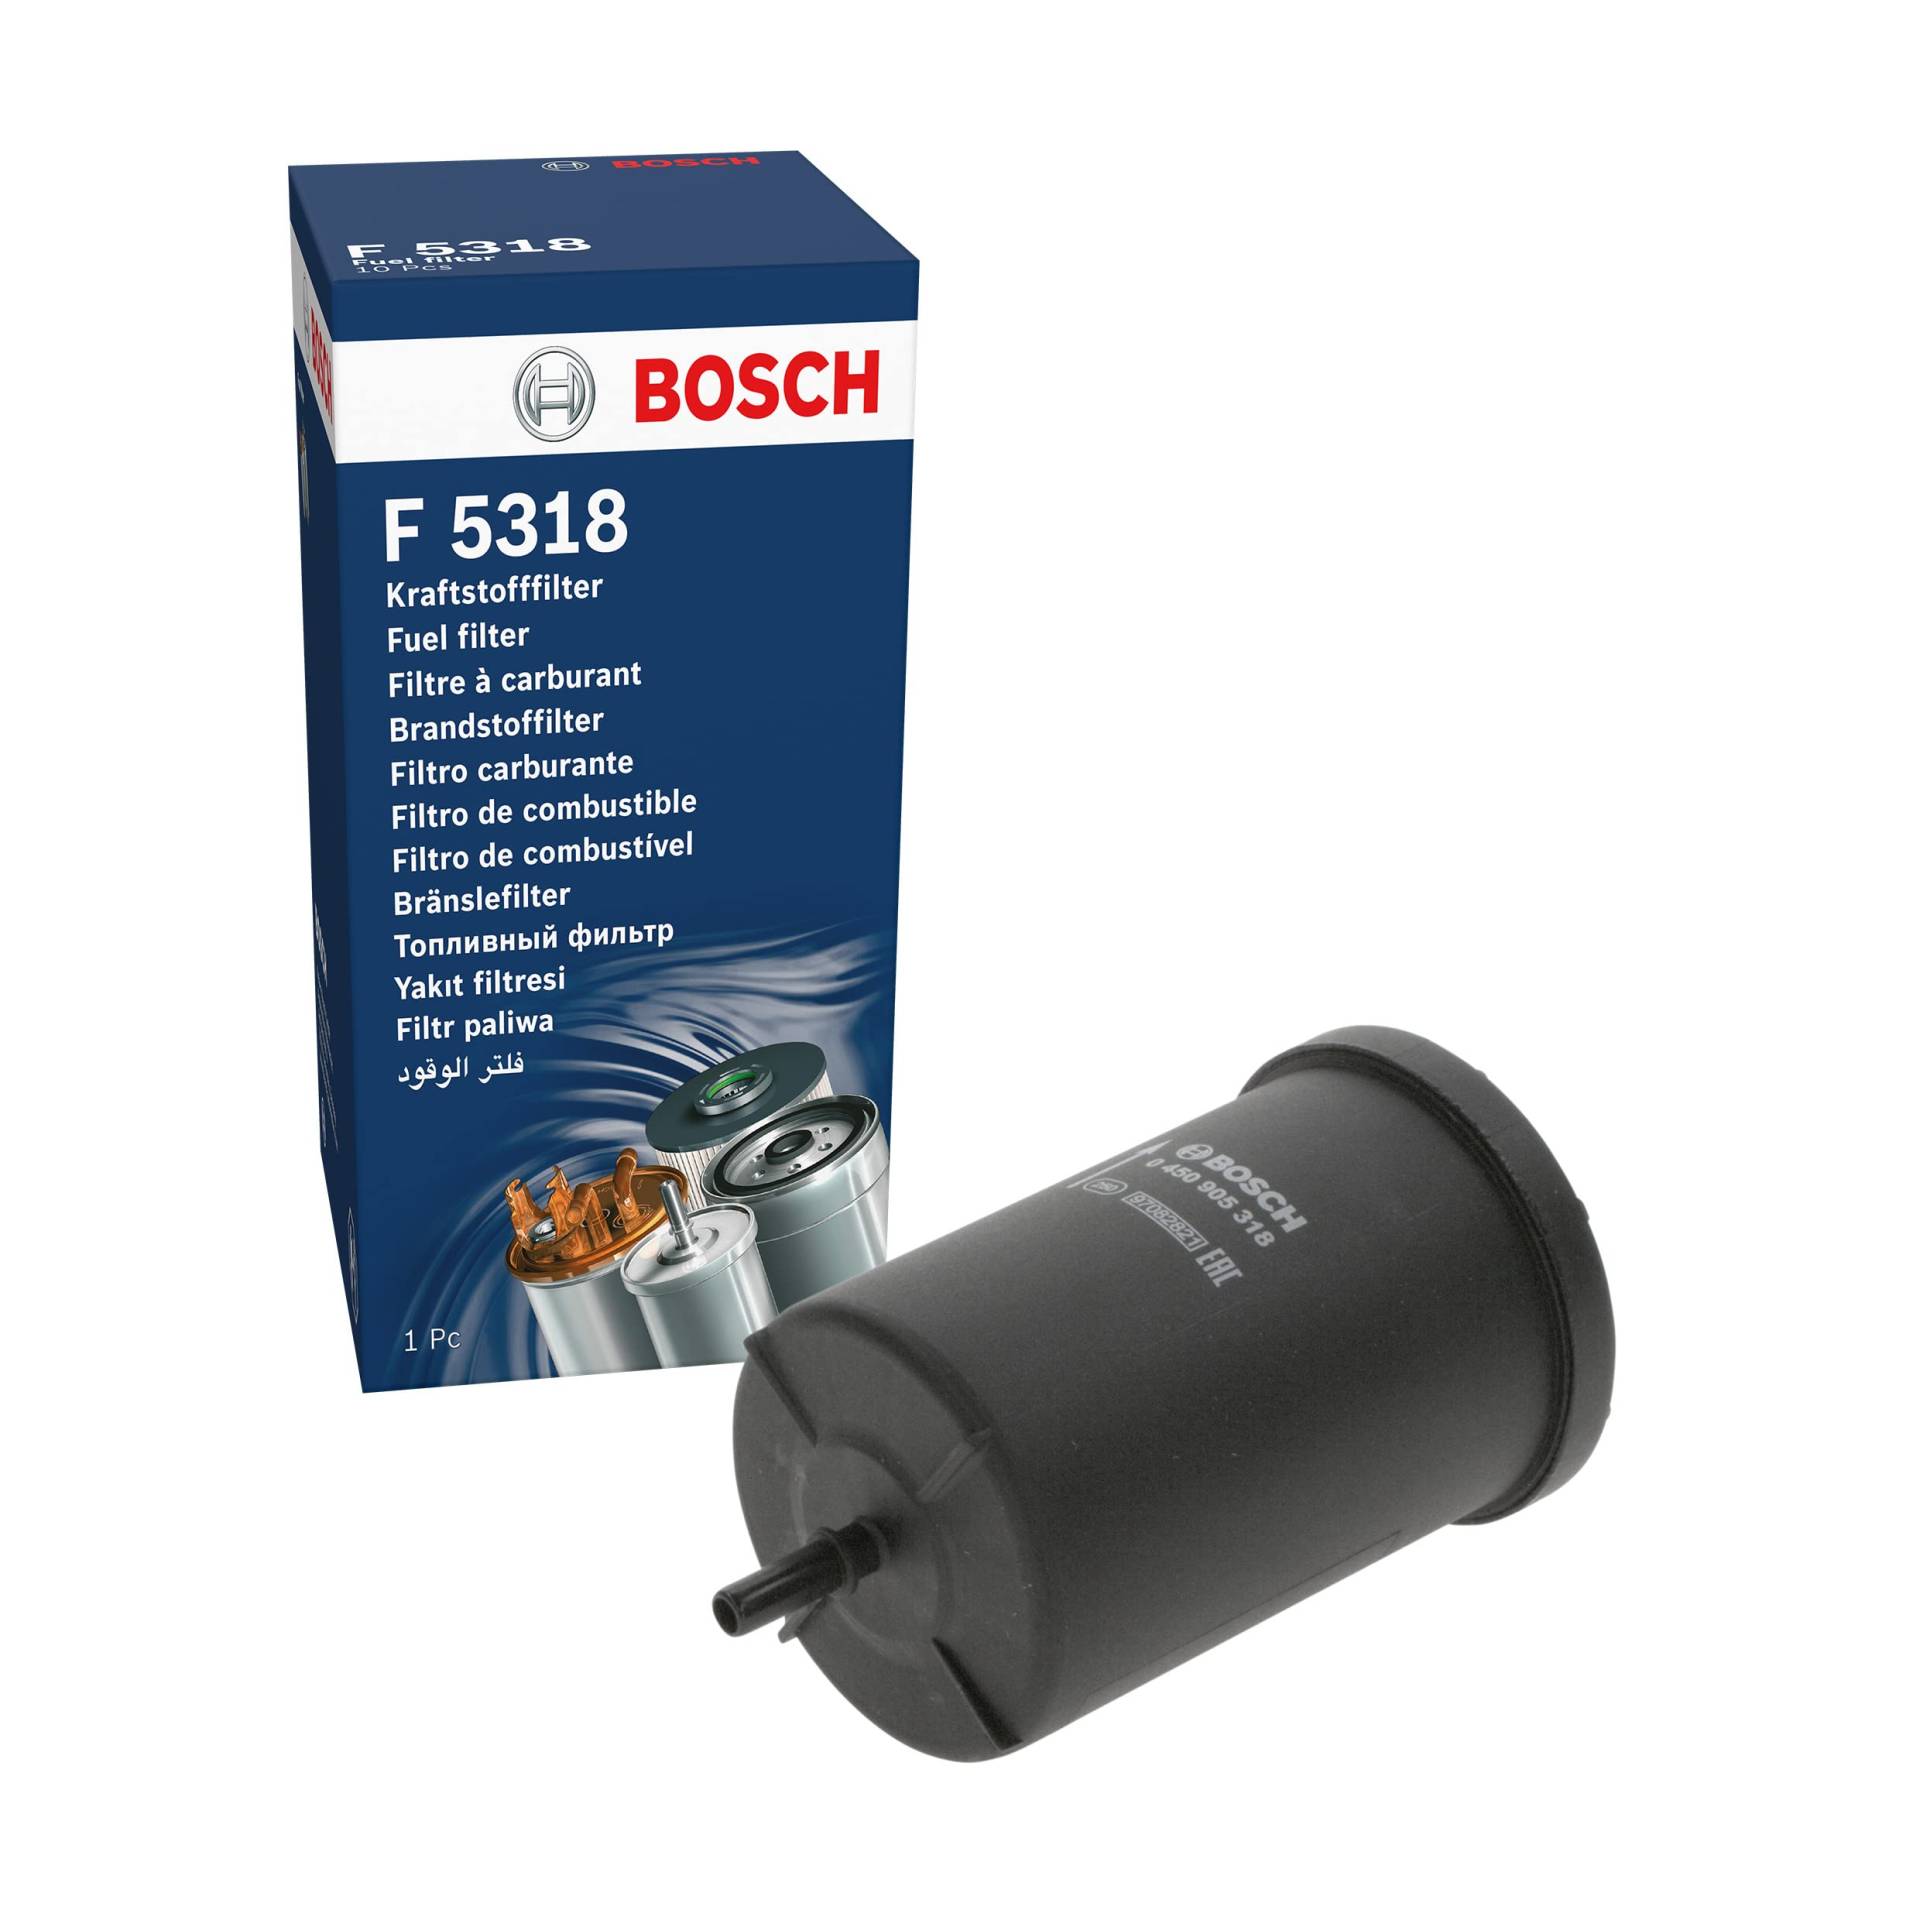 Bosch F5318 - Benzinfilter Auto von Bosch Automotive